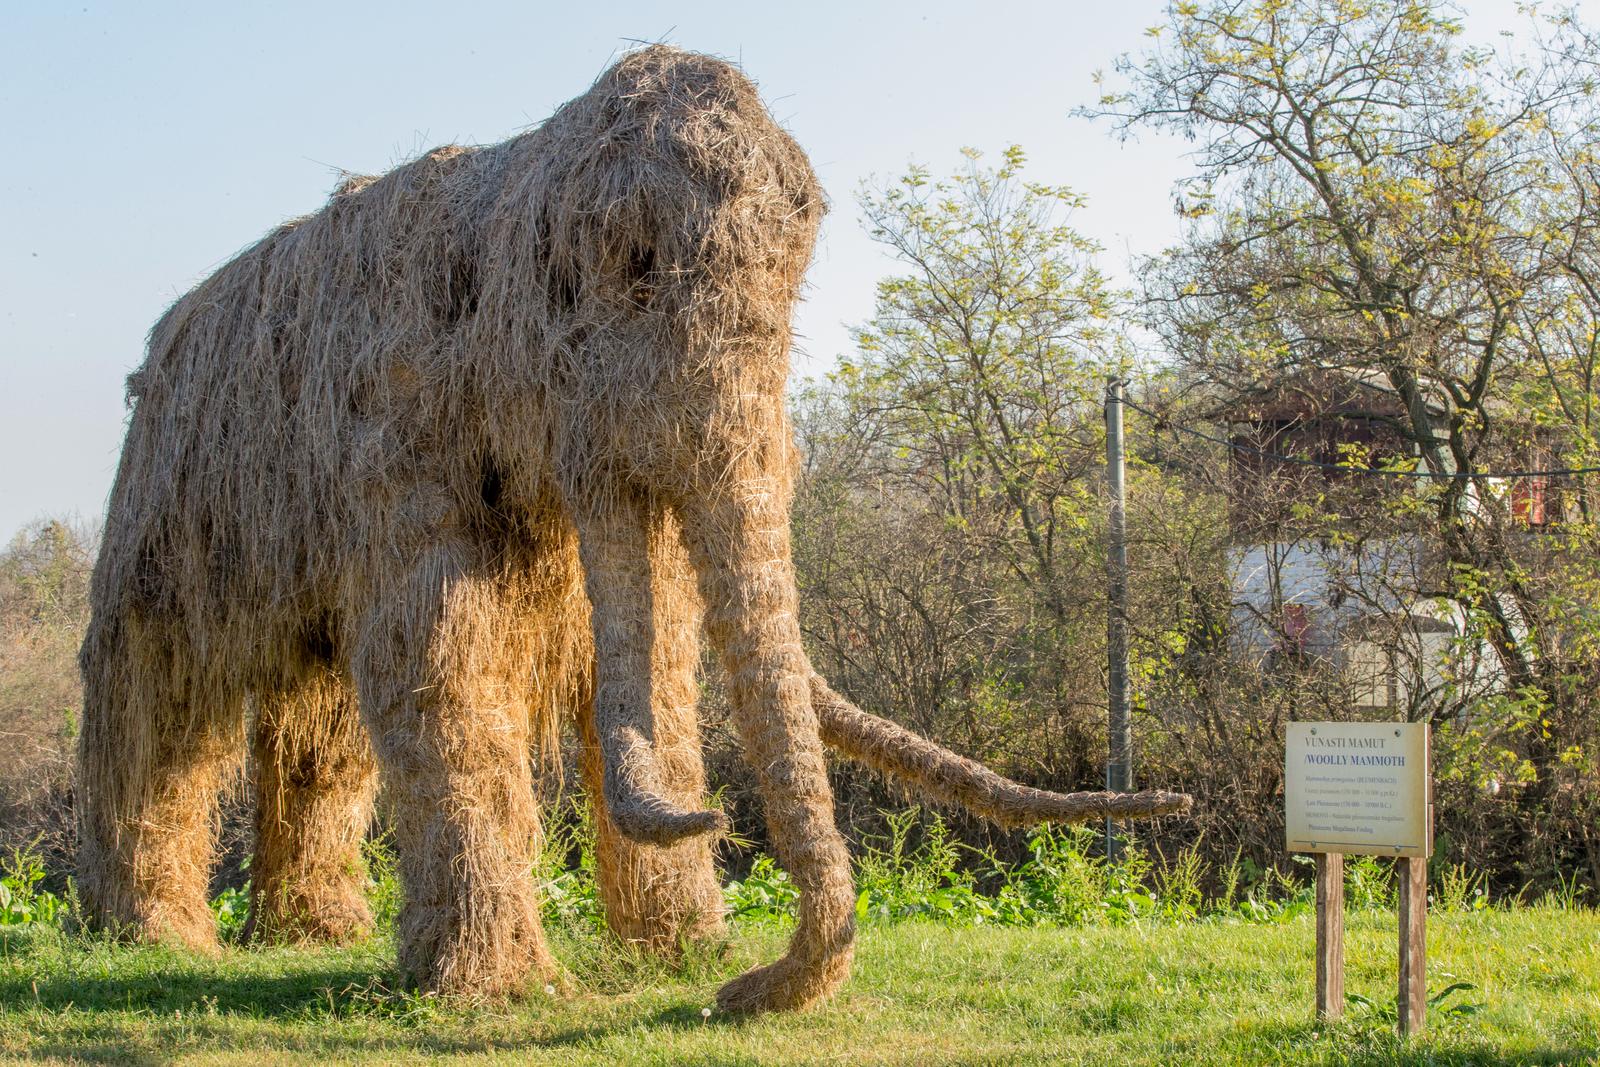 08.11.2018., Mohovo - Udruga Dolina mamuta osnovana je u selu Mohovo, koje se nalazi nedaleko Iloka, a cilj udruge je izgradnja edukacijskog parka posvecenog ovim davno izumrlim zivotinjama. Upravo stoga u sredistu mjesta nalazi se slamnata skulptura mamuta u prirodnoj velicini. U samo nekoliko godina u mjestu su pronadjena dva zuba mamuta, a prema paleontoloskim nalazima ondje bi moglo biti iznimno bogato nalaziste. Mjestani se nadaju da bi dolina mamuta mogla biti prava turisticka atrakcija.rPhoto: Dubravka Petric/PIXSELL